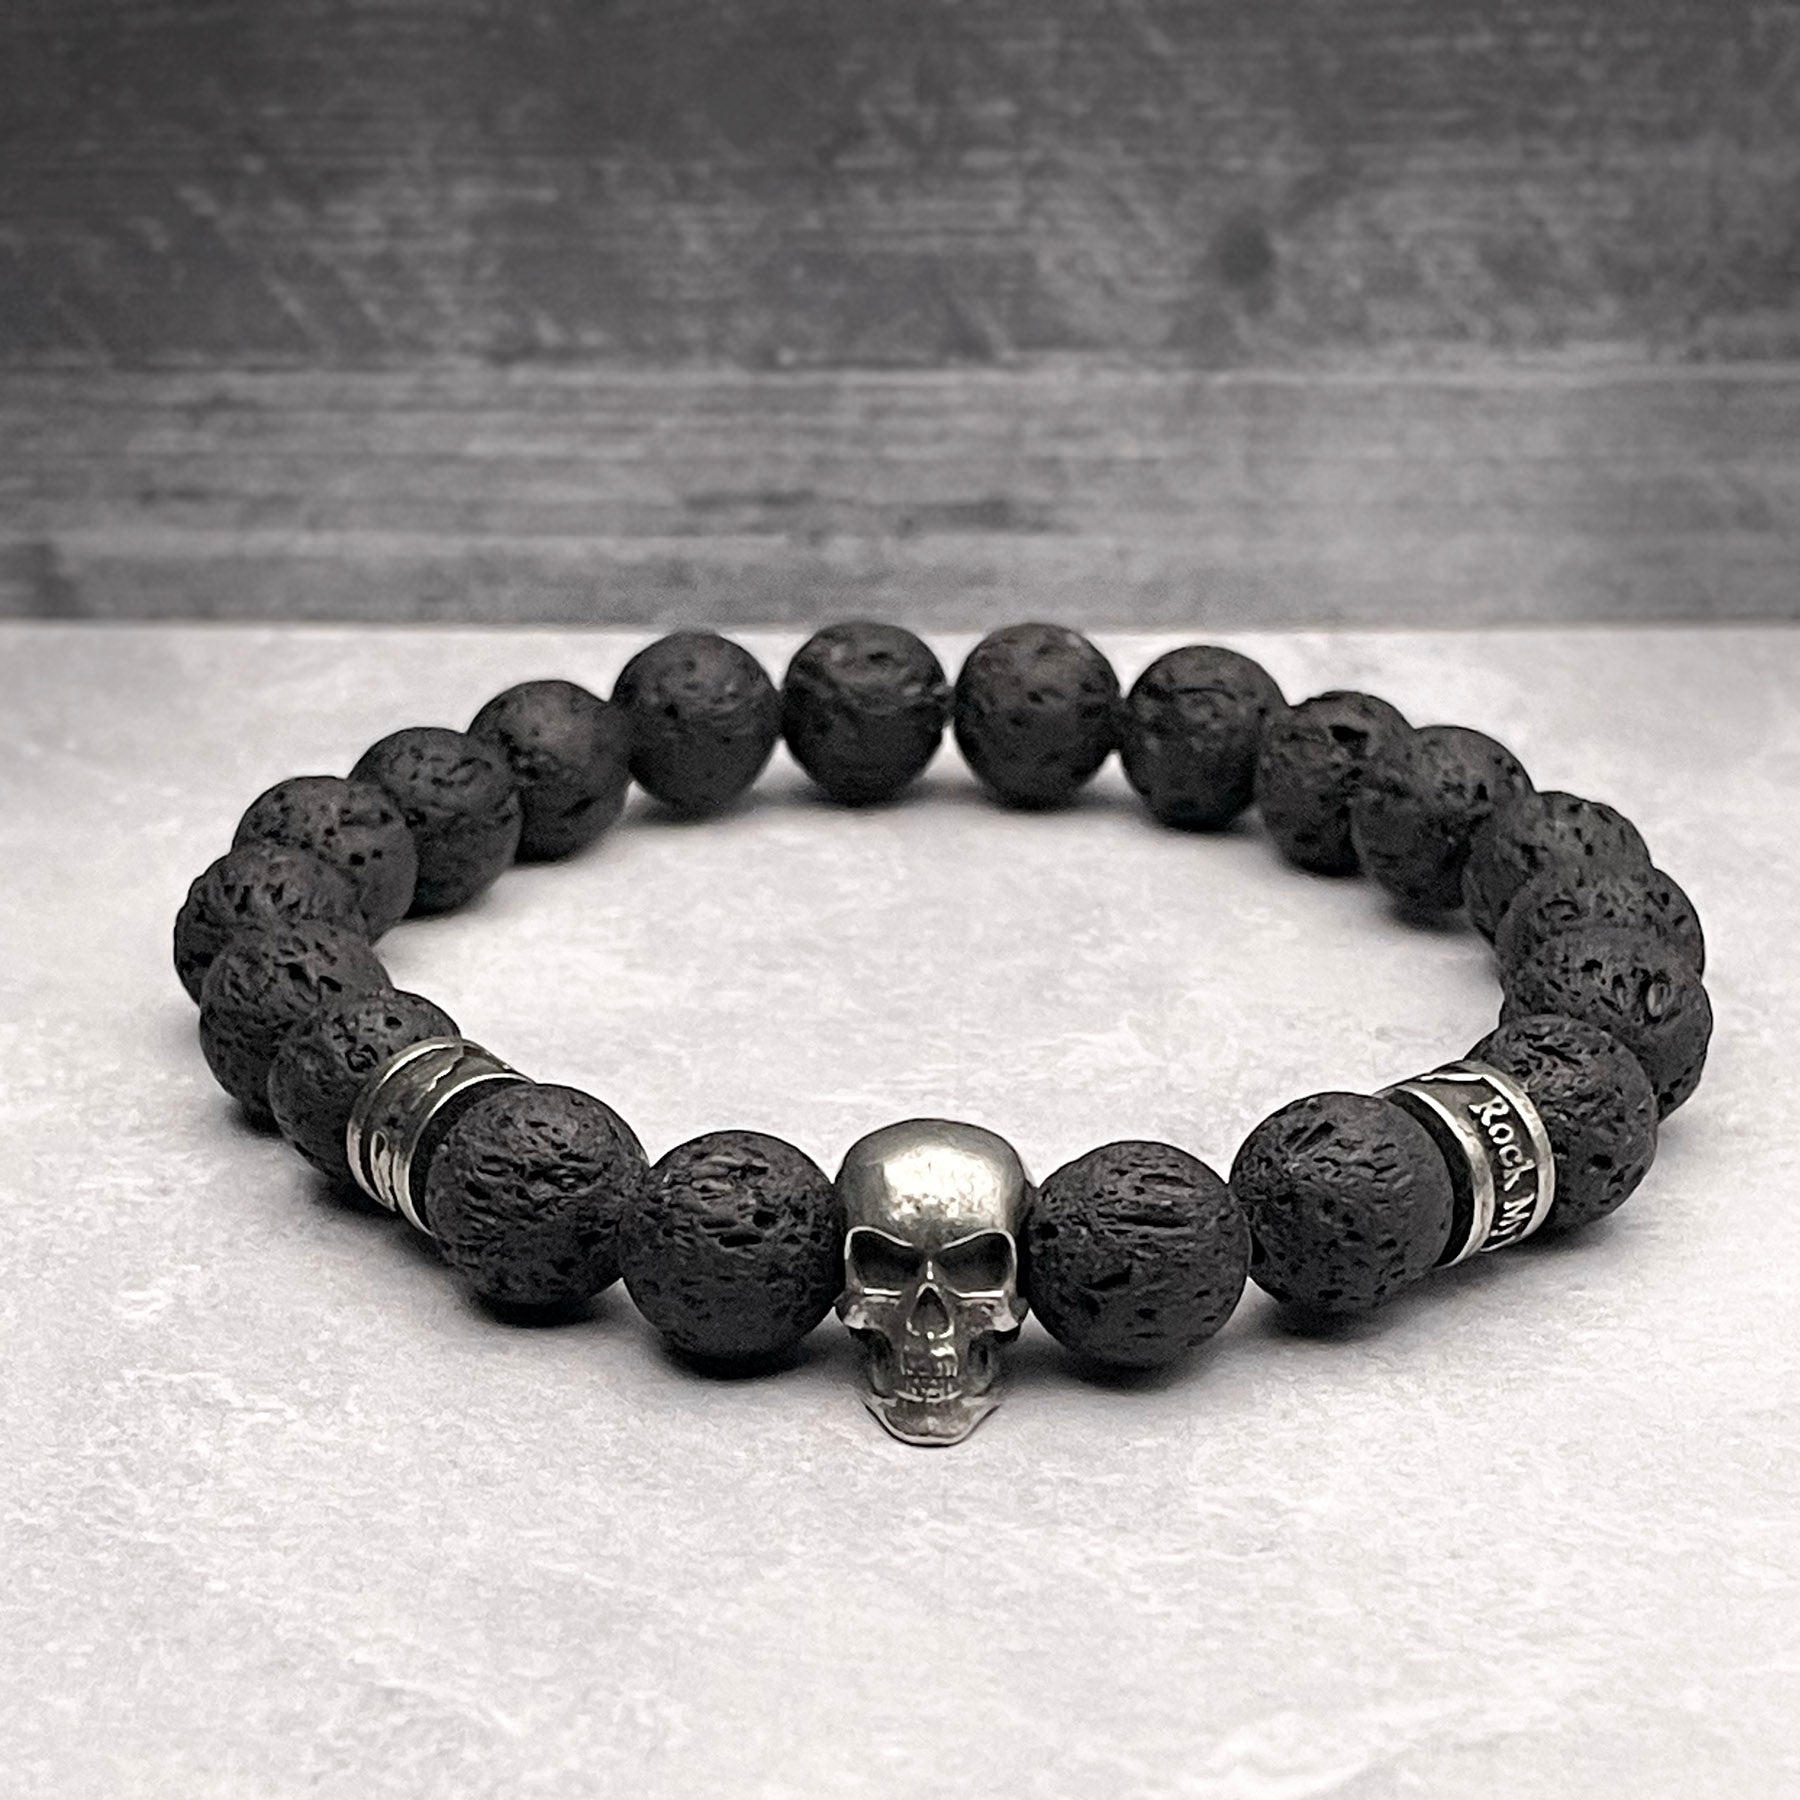 Lava rock and skull bead bracelet for men or women by Rock my Wings